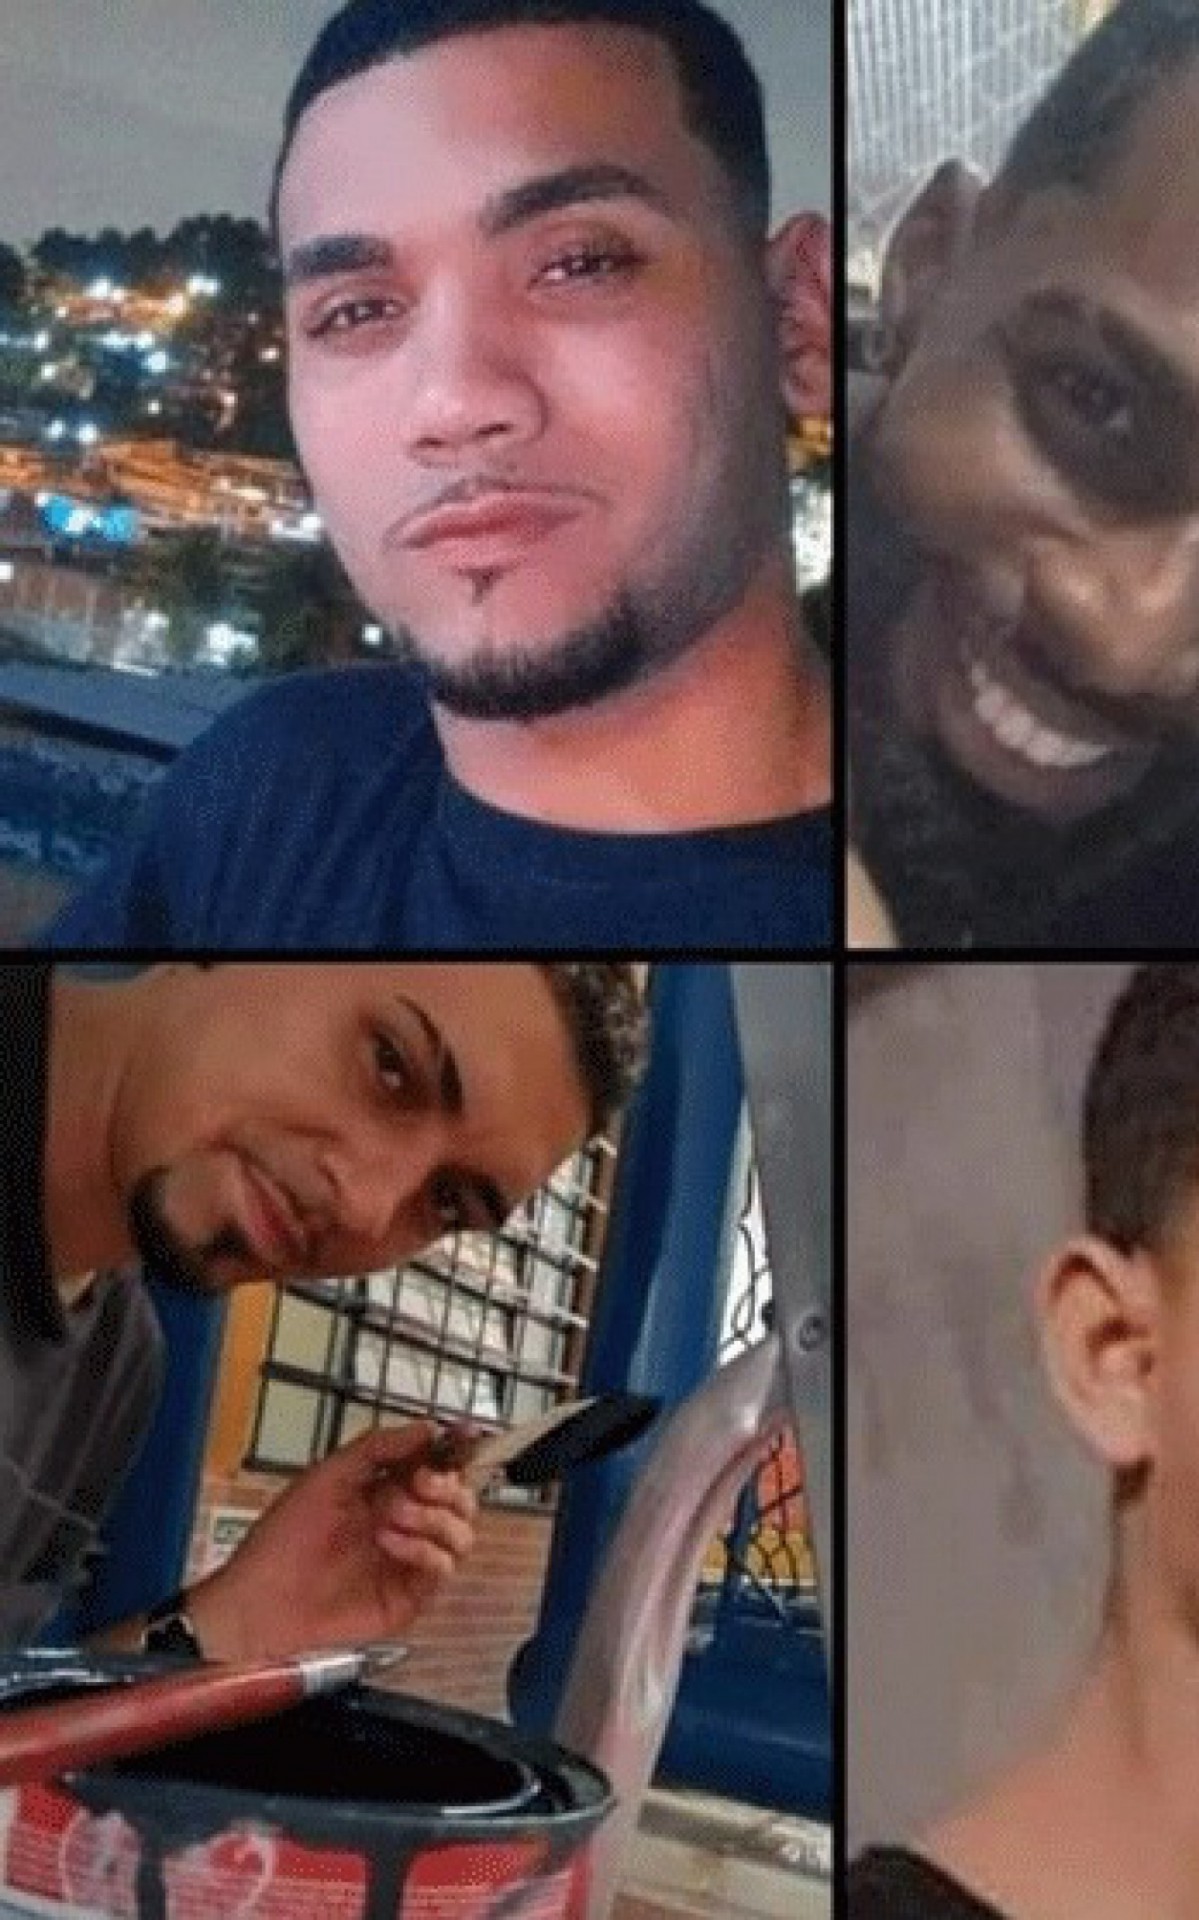 Quatro jovens estão desaparecidos desde o fim da tarde de sexta-feira (12), em Nova Iguaçu - Reprodução/Redes sociais